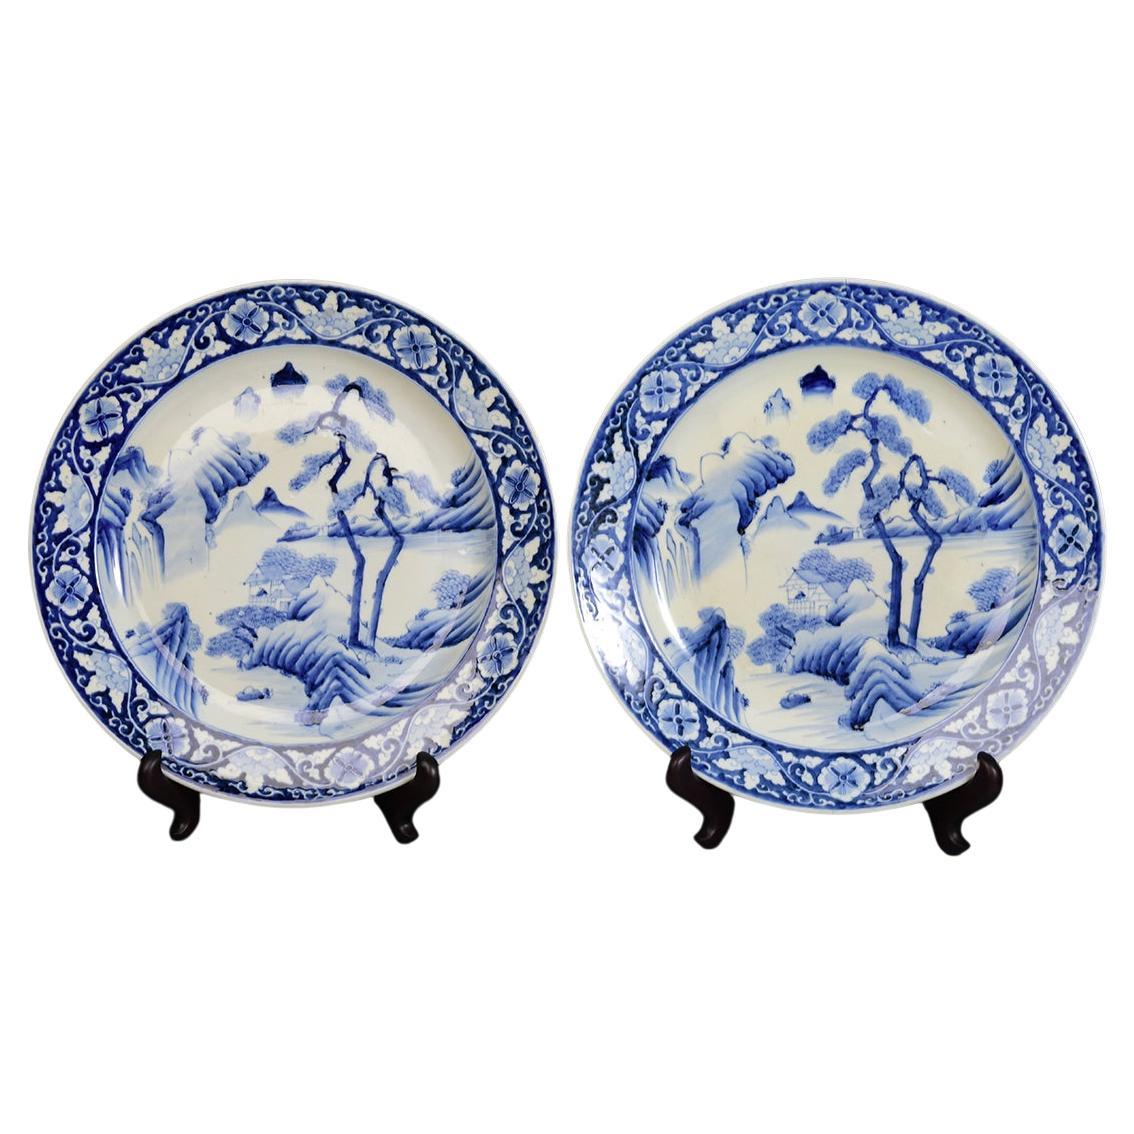 19. Jahrhundert, Meiji, ein Paar antike japanische Tellerschalen aus blauem und weißem Porzellan